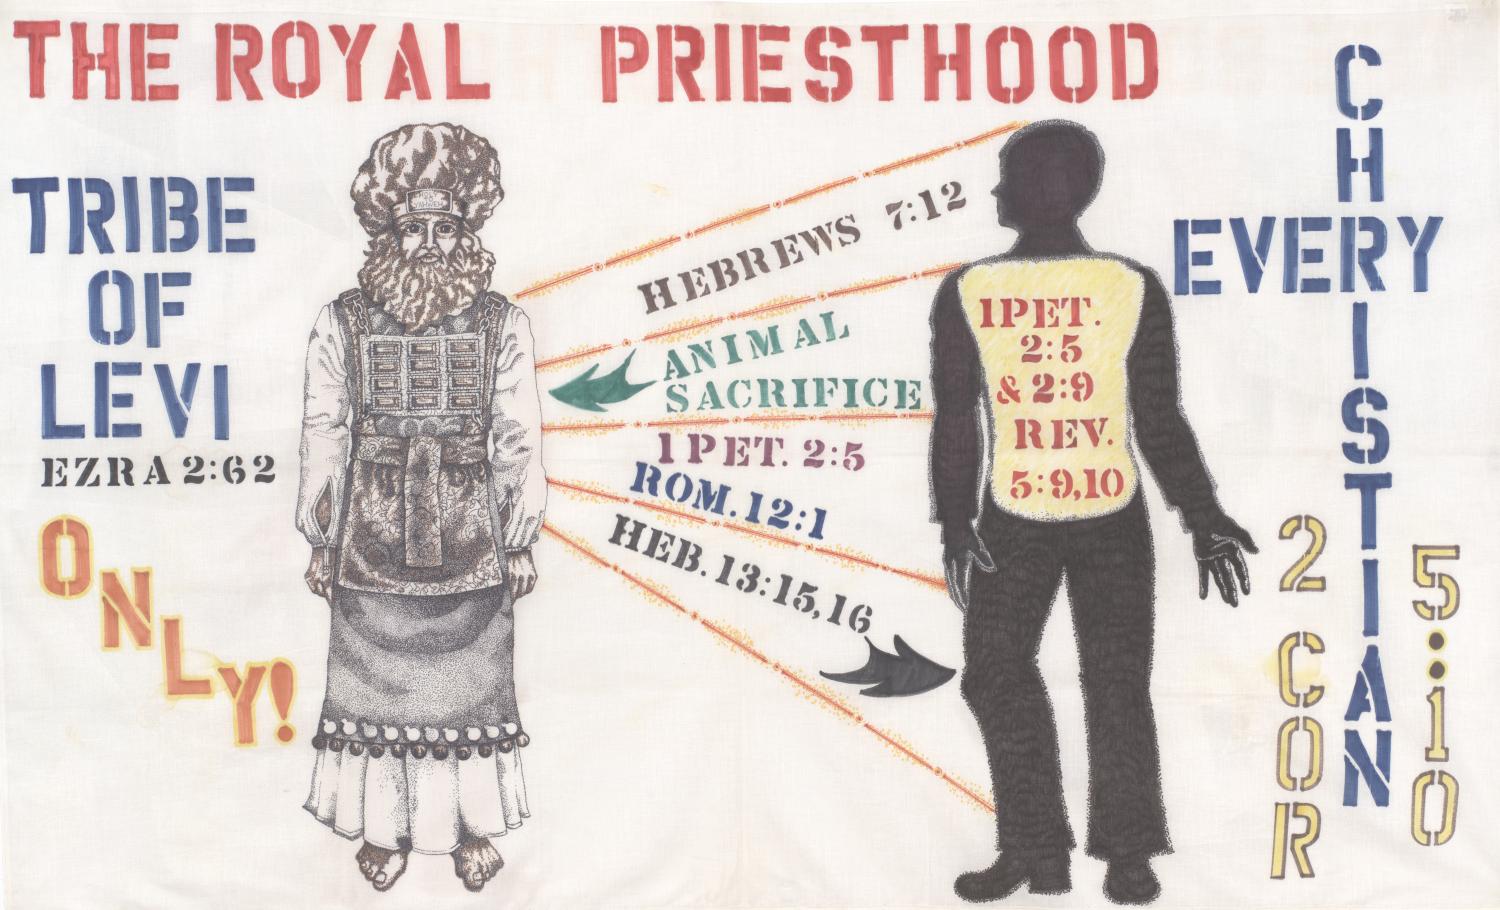 The Royal Priesthood - The Portal to Texas History